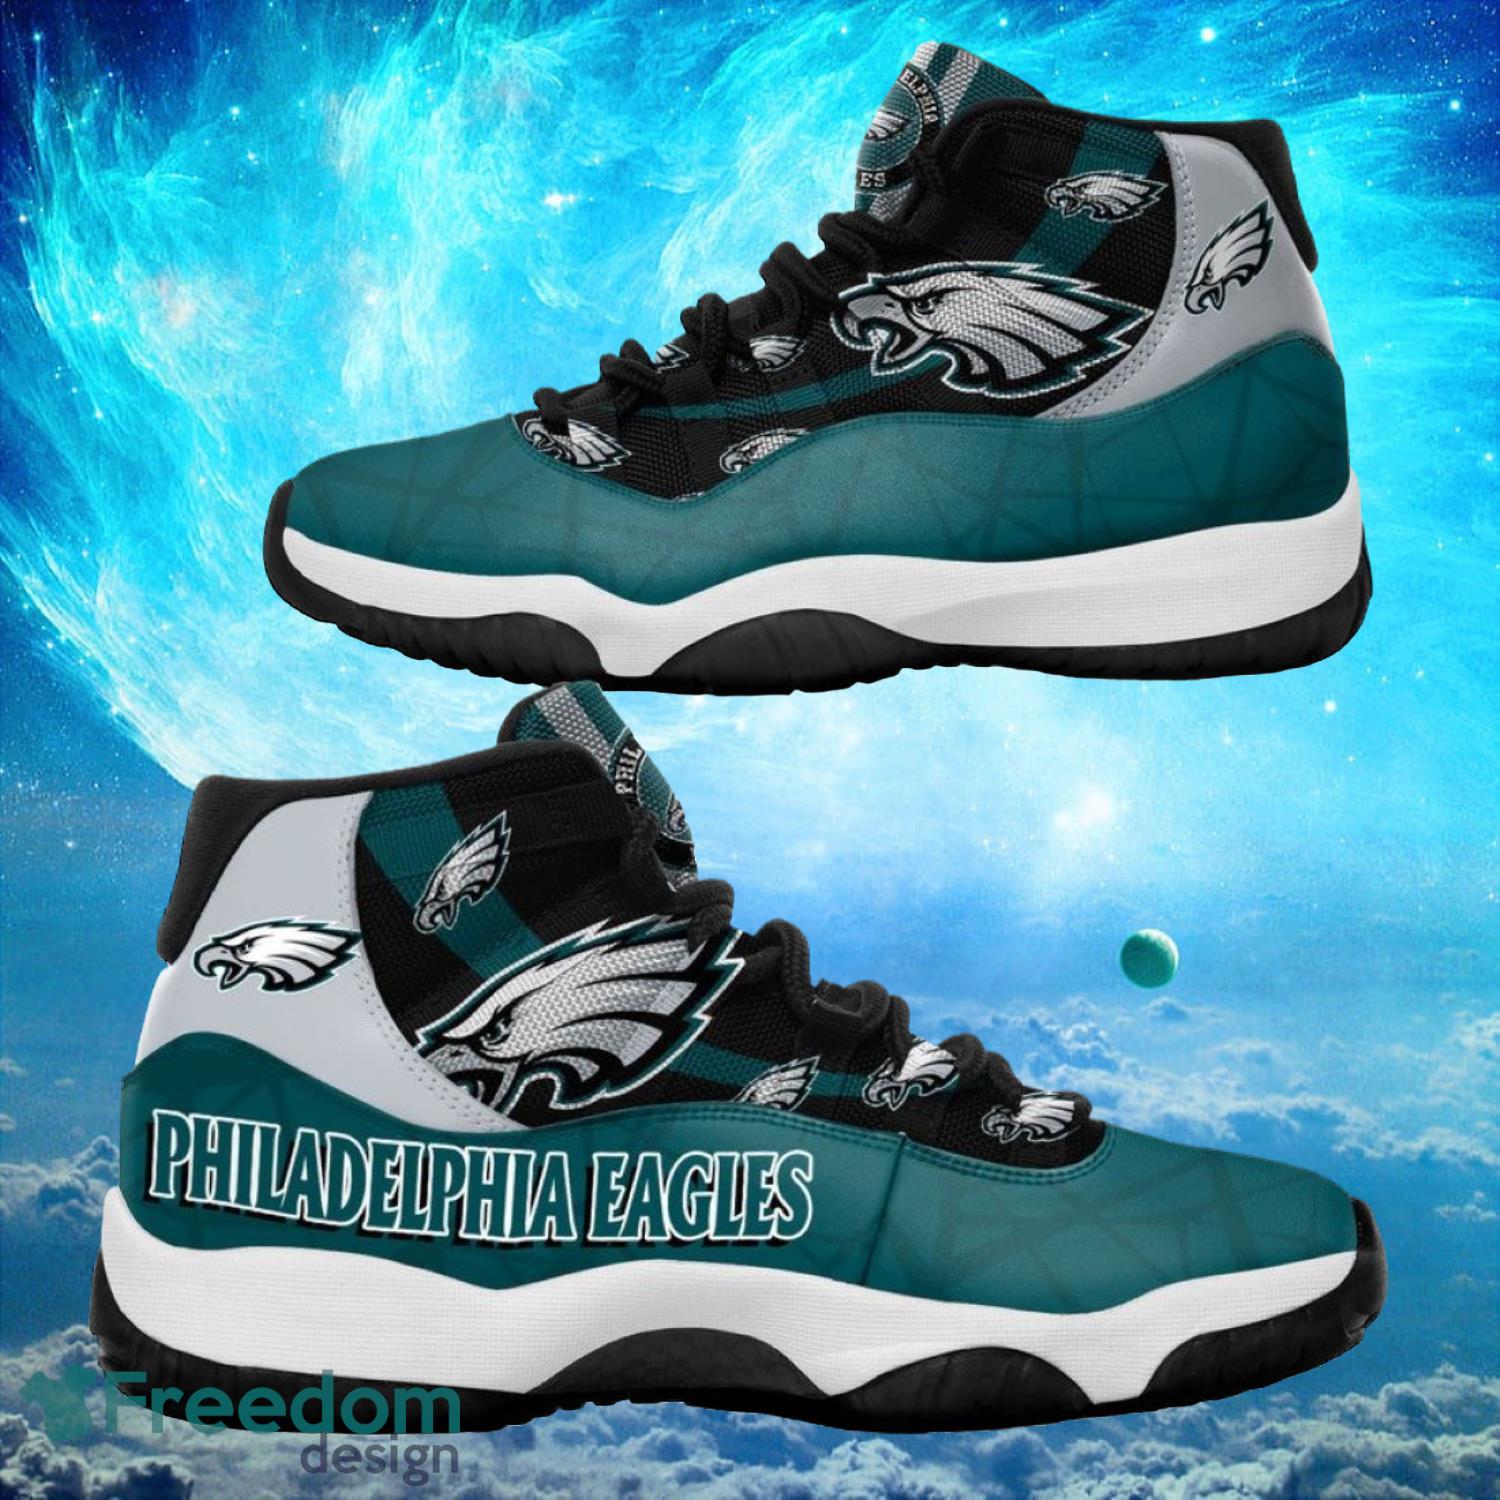 Philadelphia Eagles NFL Air Jordan 11 Sneakers Shoes Gift For Fans -  Freedomdesign